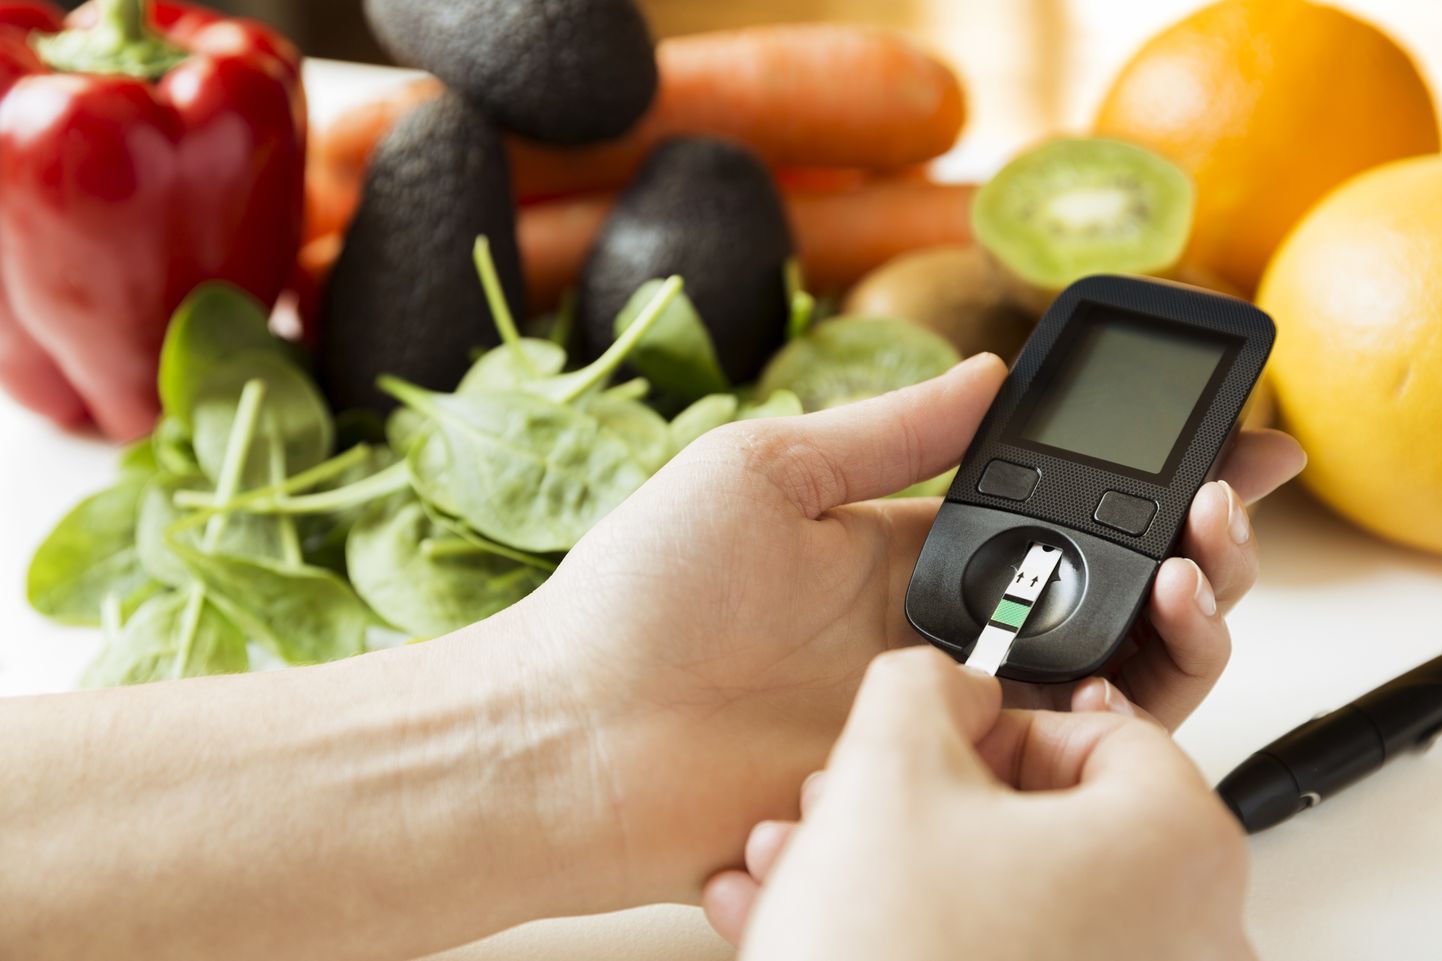 Veresuhkrunäitajaid võib oluliselt mõjutada tervislik toitumine ja elustiil.